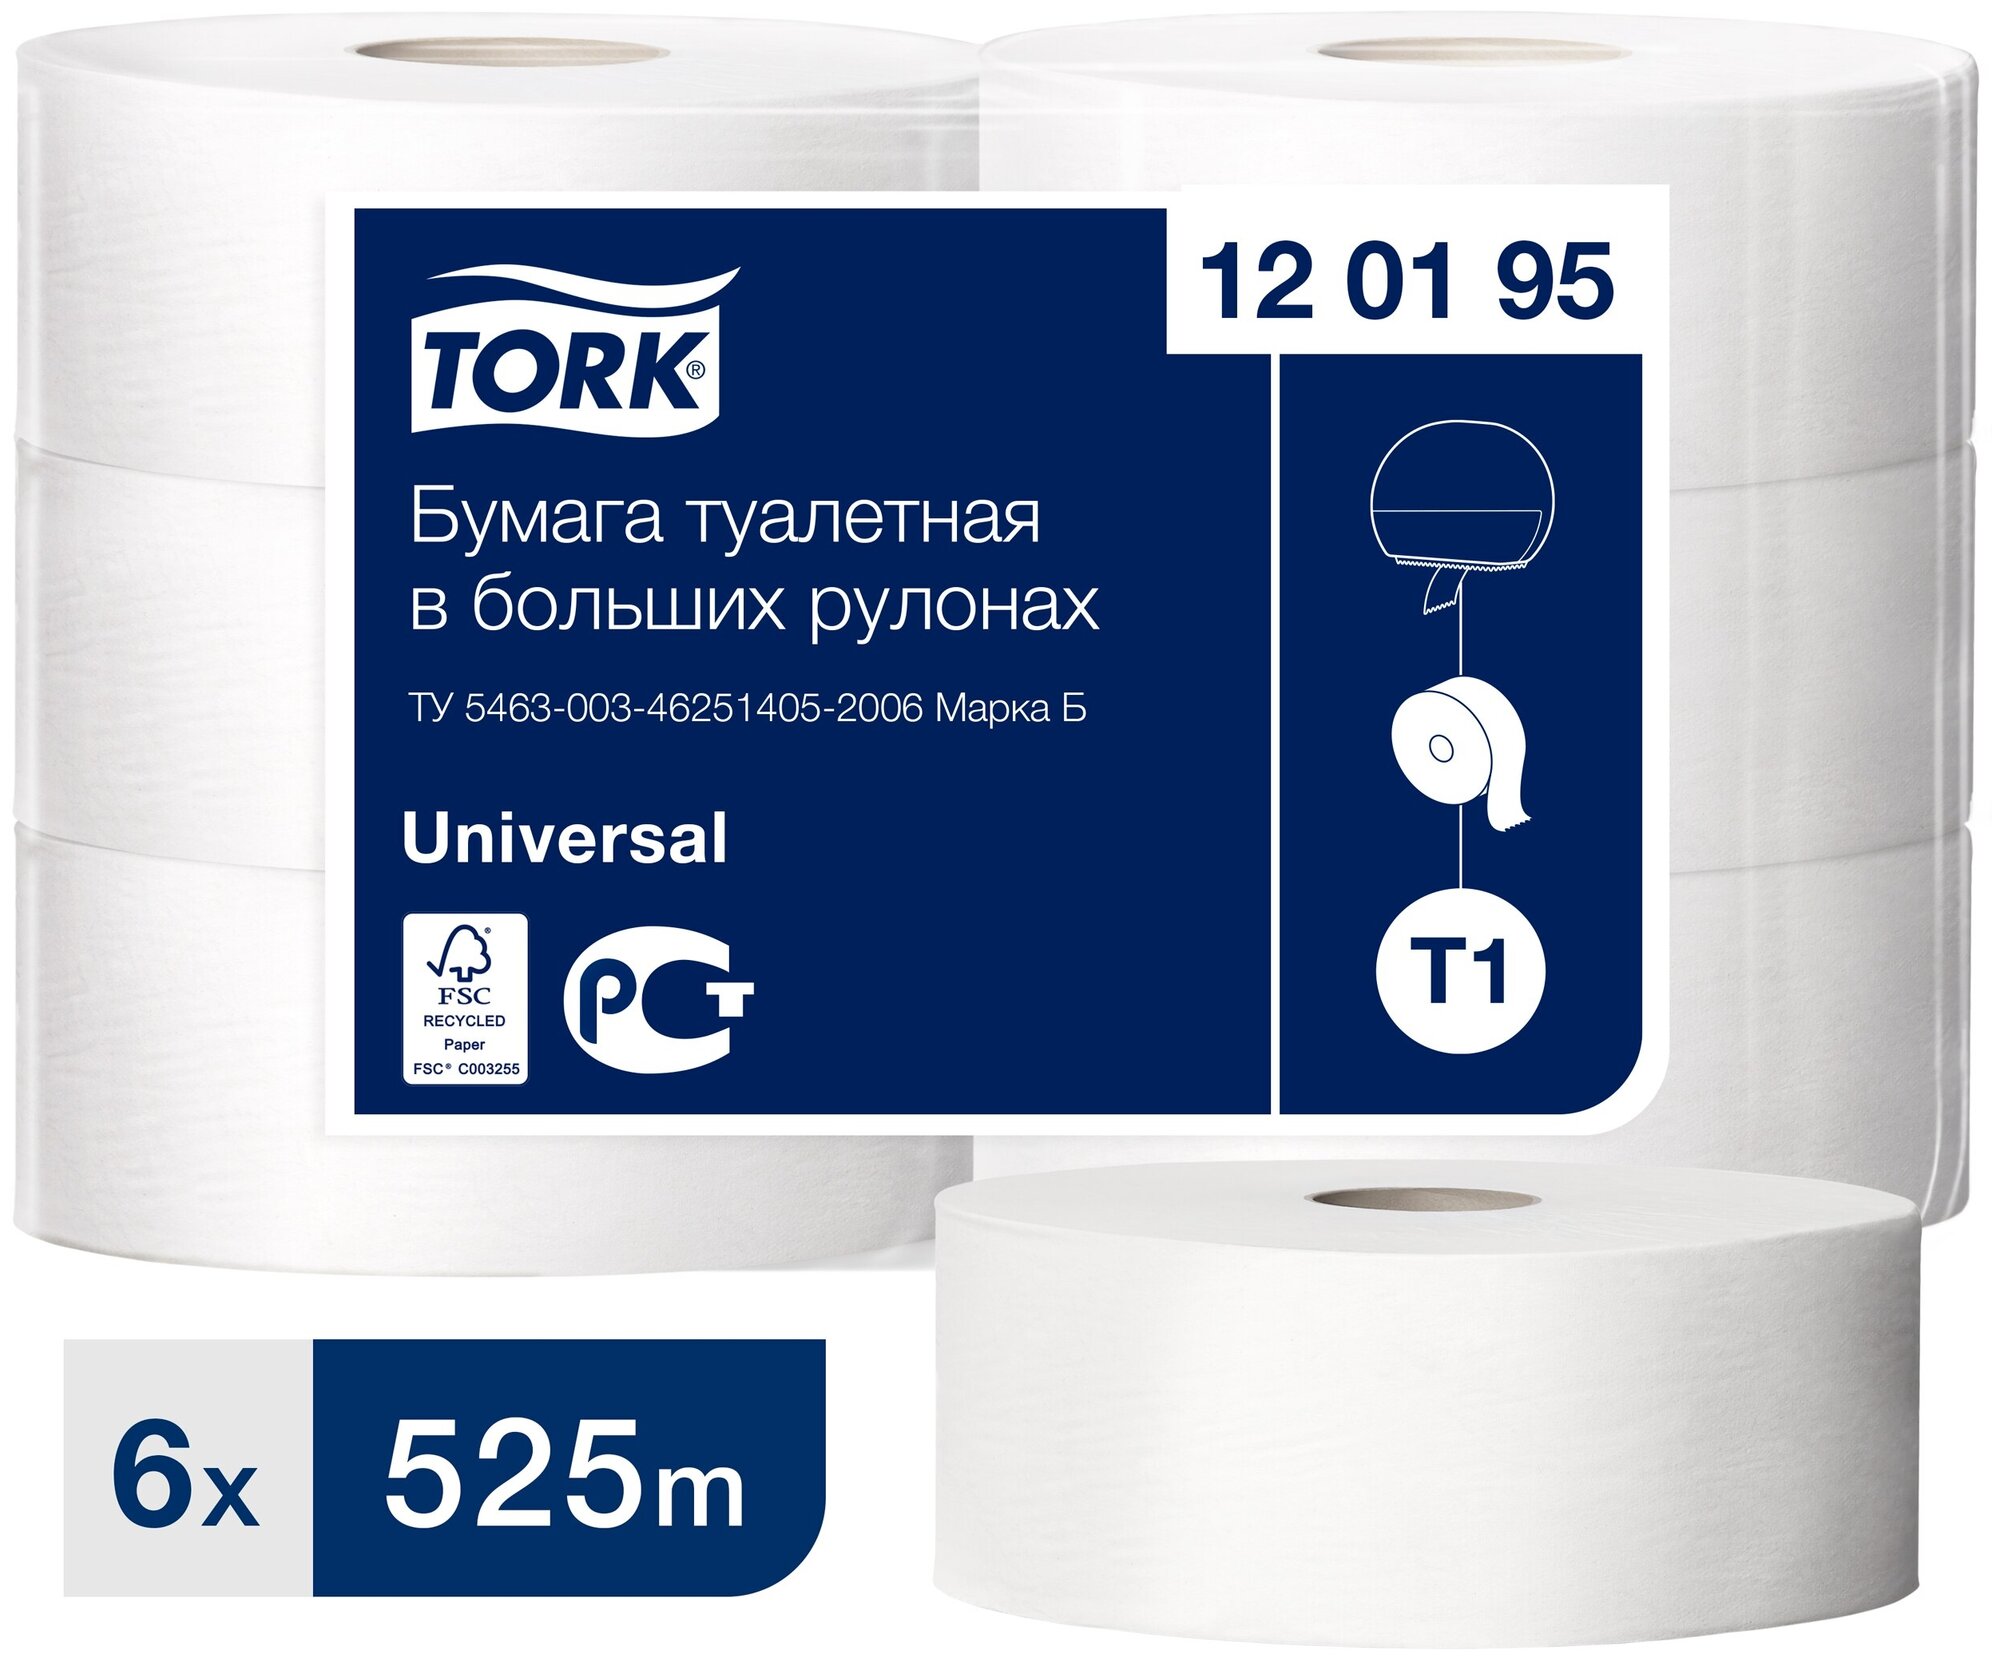 Промо T1 Tork Universal туалетная бумага в больших рулонах, Система Т1 - Туалетная бумага в больших рулонах Jumbo, 525 м х 9,5см, 1-слойная, белая, без перфорации, 6 штук в коробке (120195)